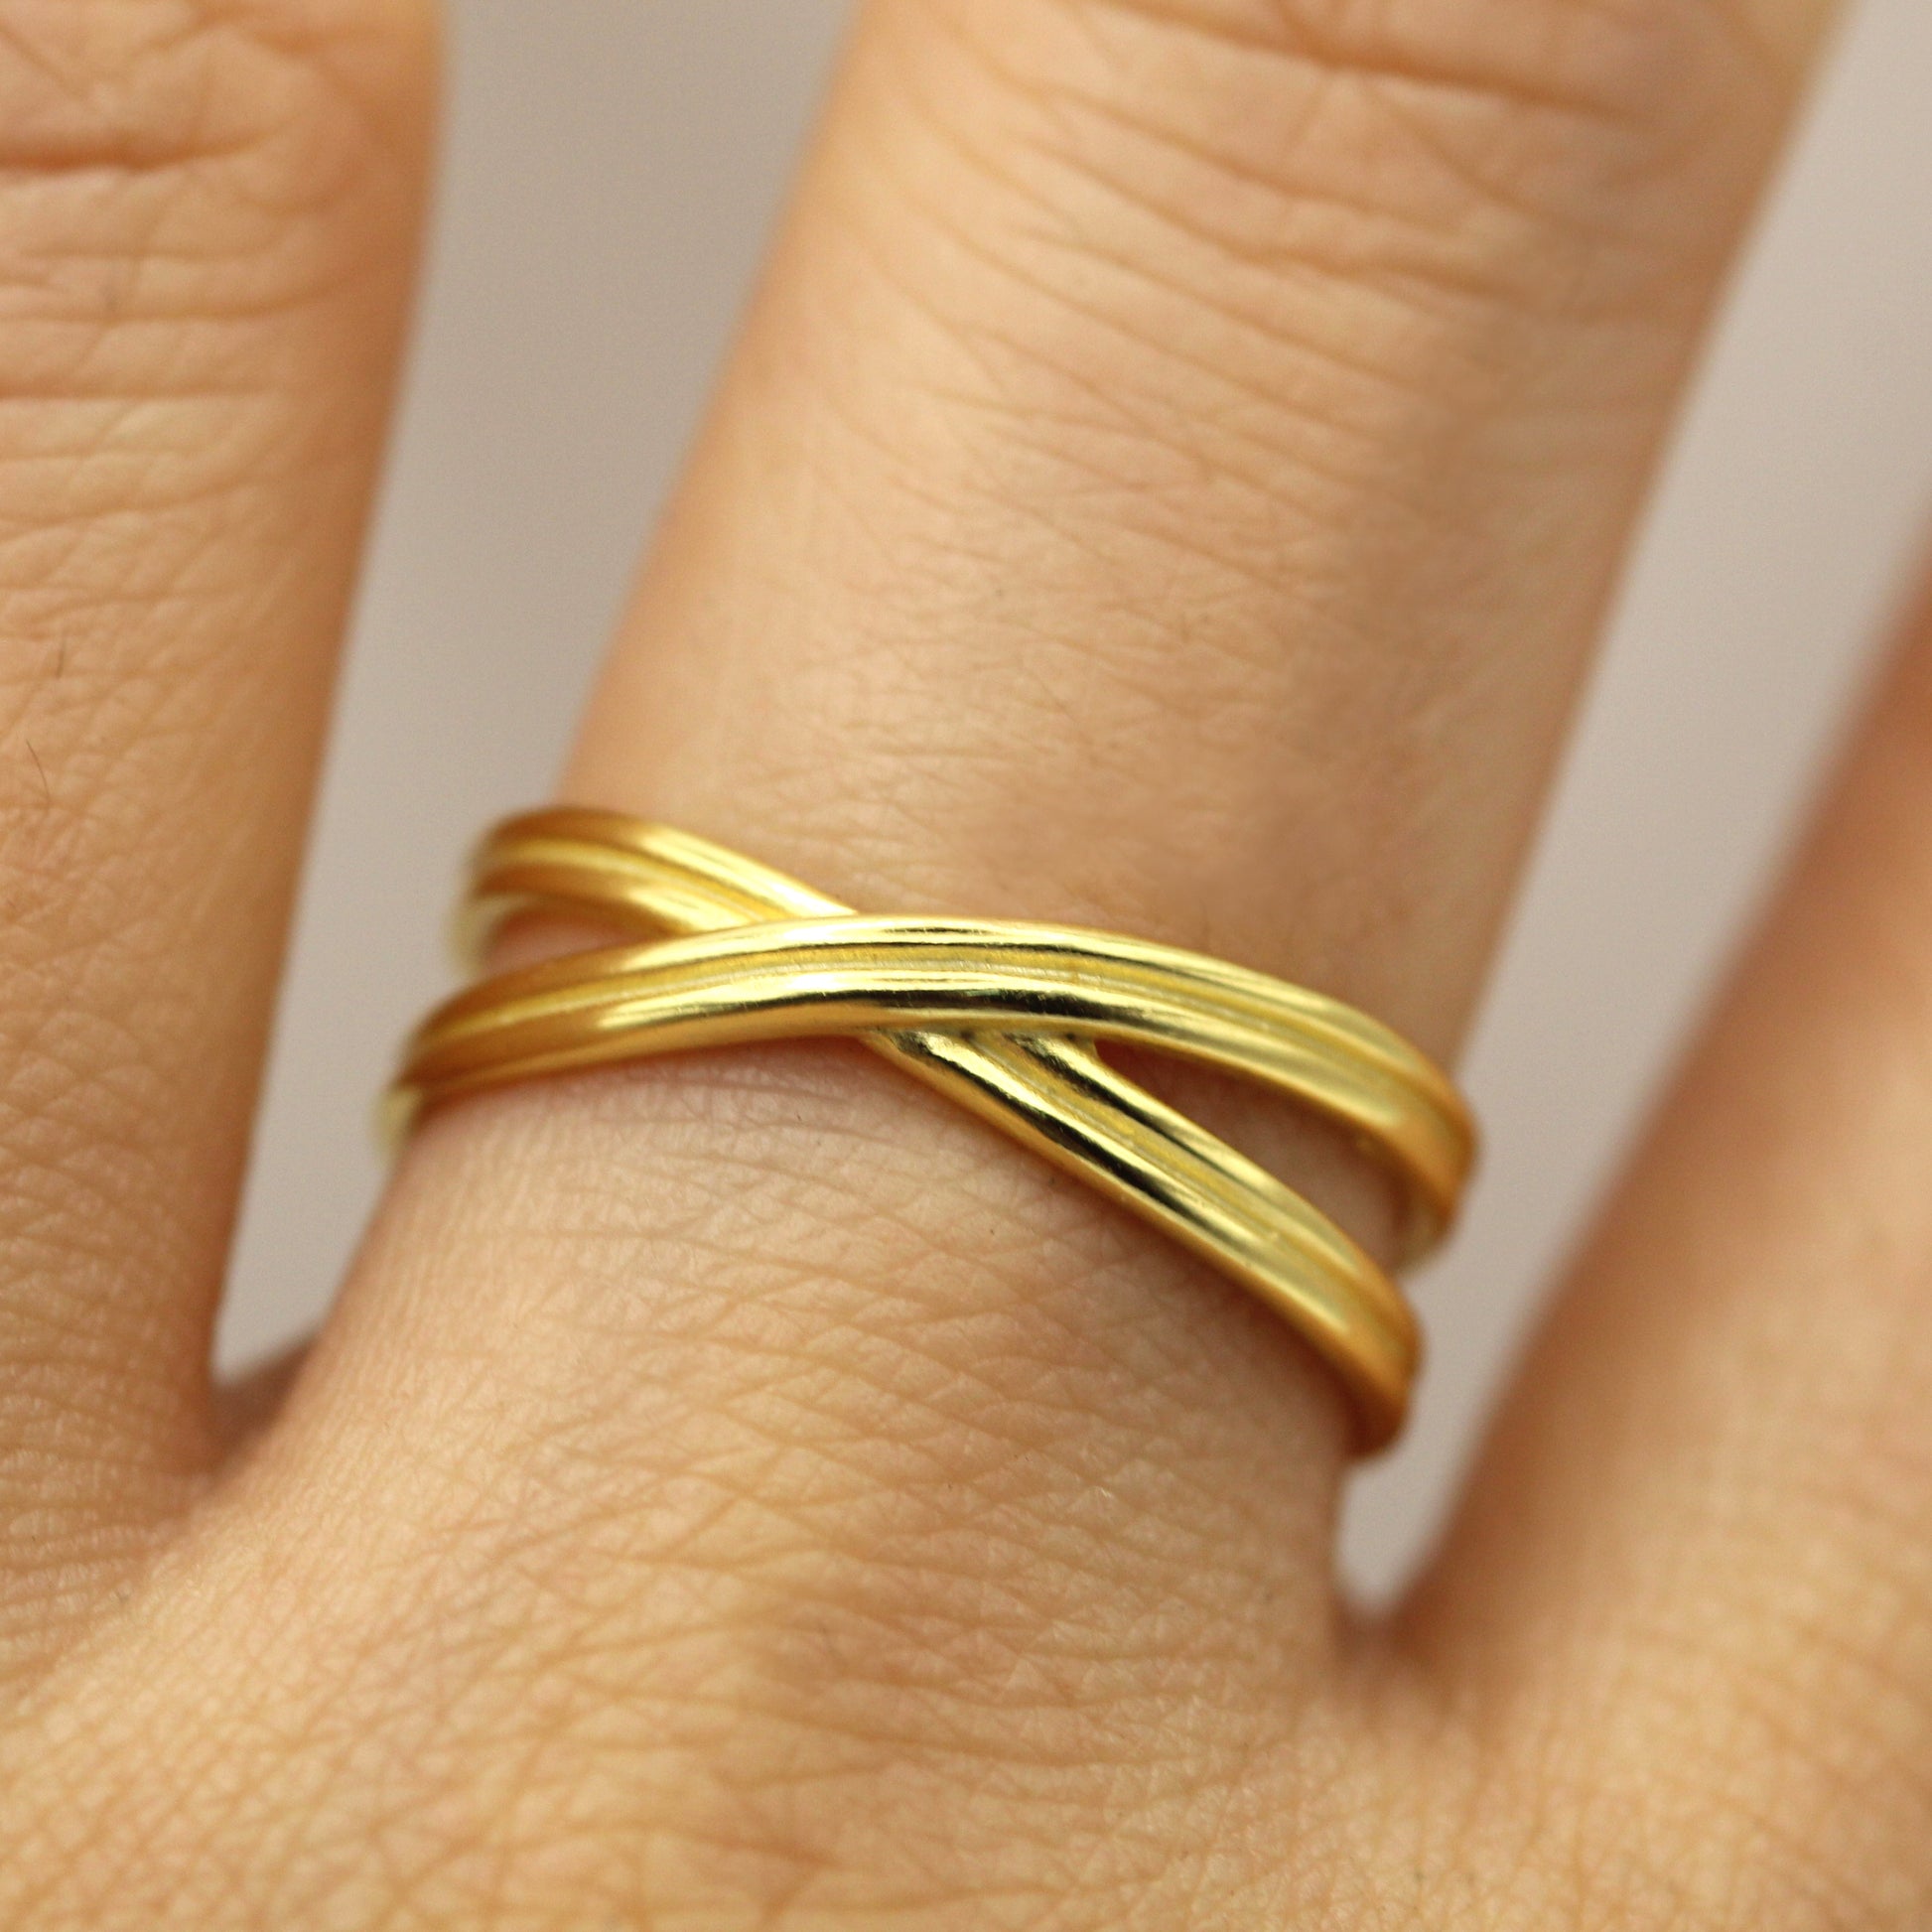 Unique Gold Ring.